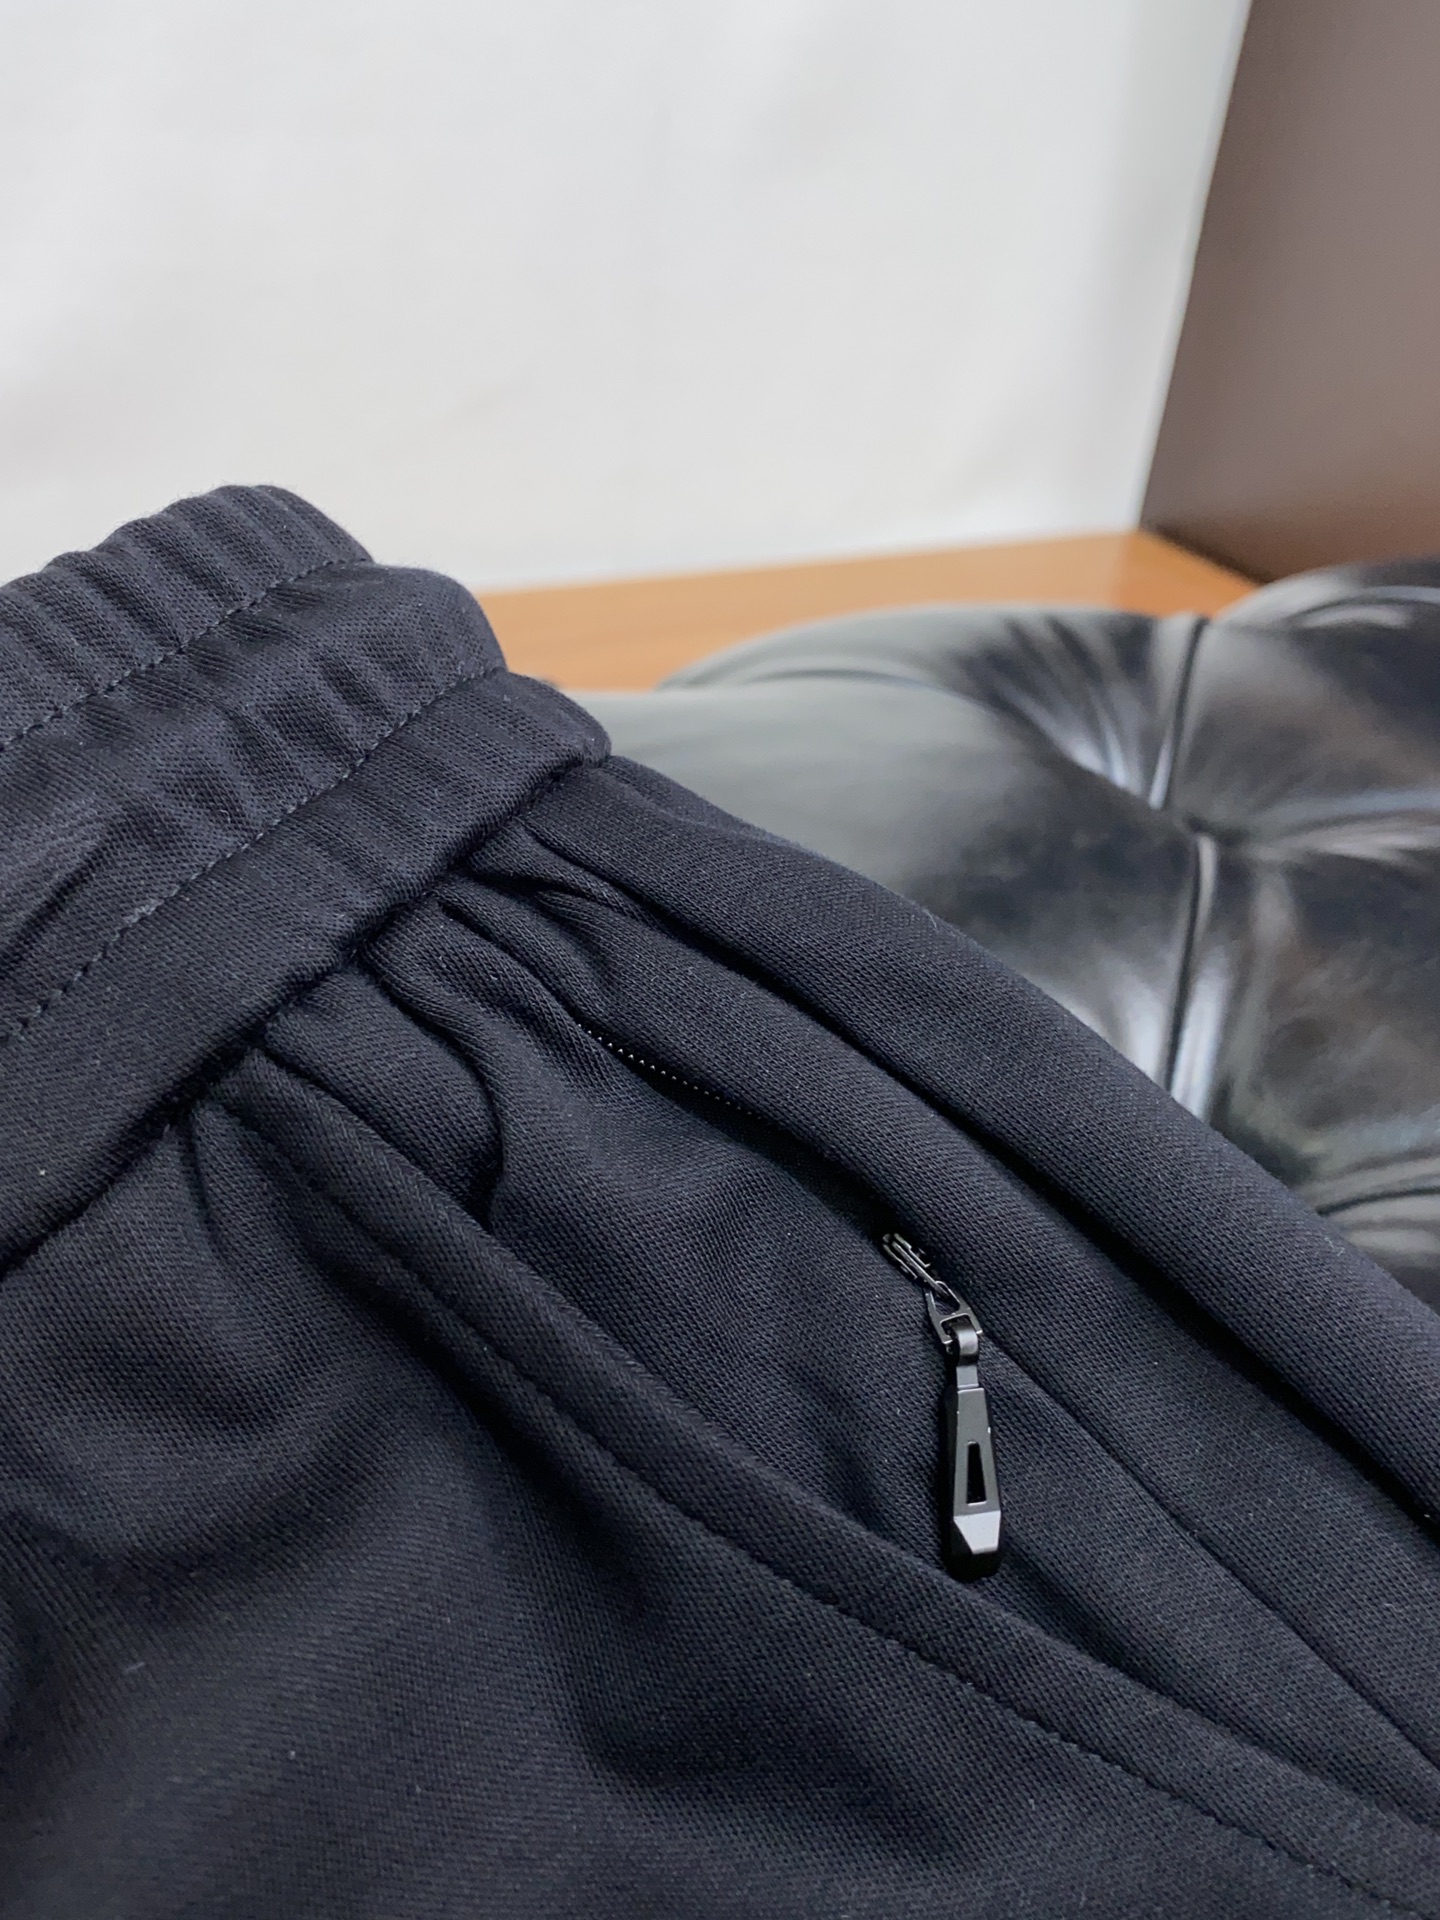 迪奥24新品同步上市原单订制高品质100%液氨棉时尚休闲裤超级百搭款独家定制面料手感细腻柔软贴身舒适上身